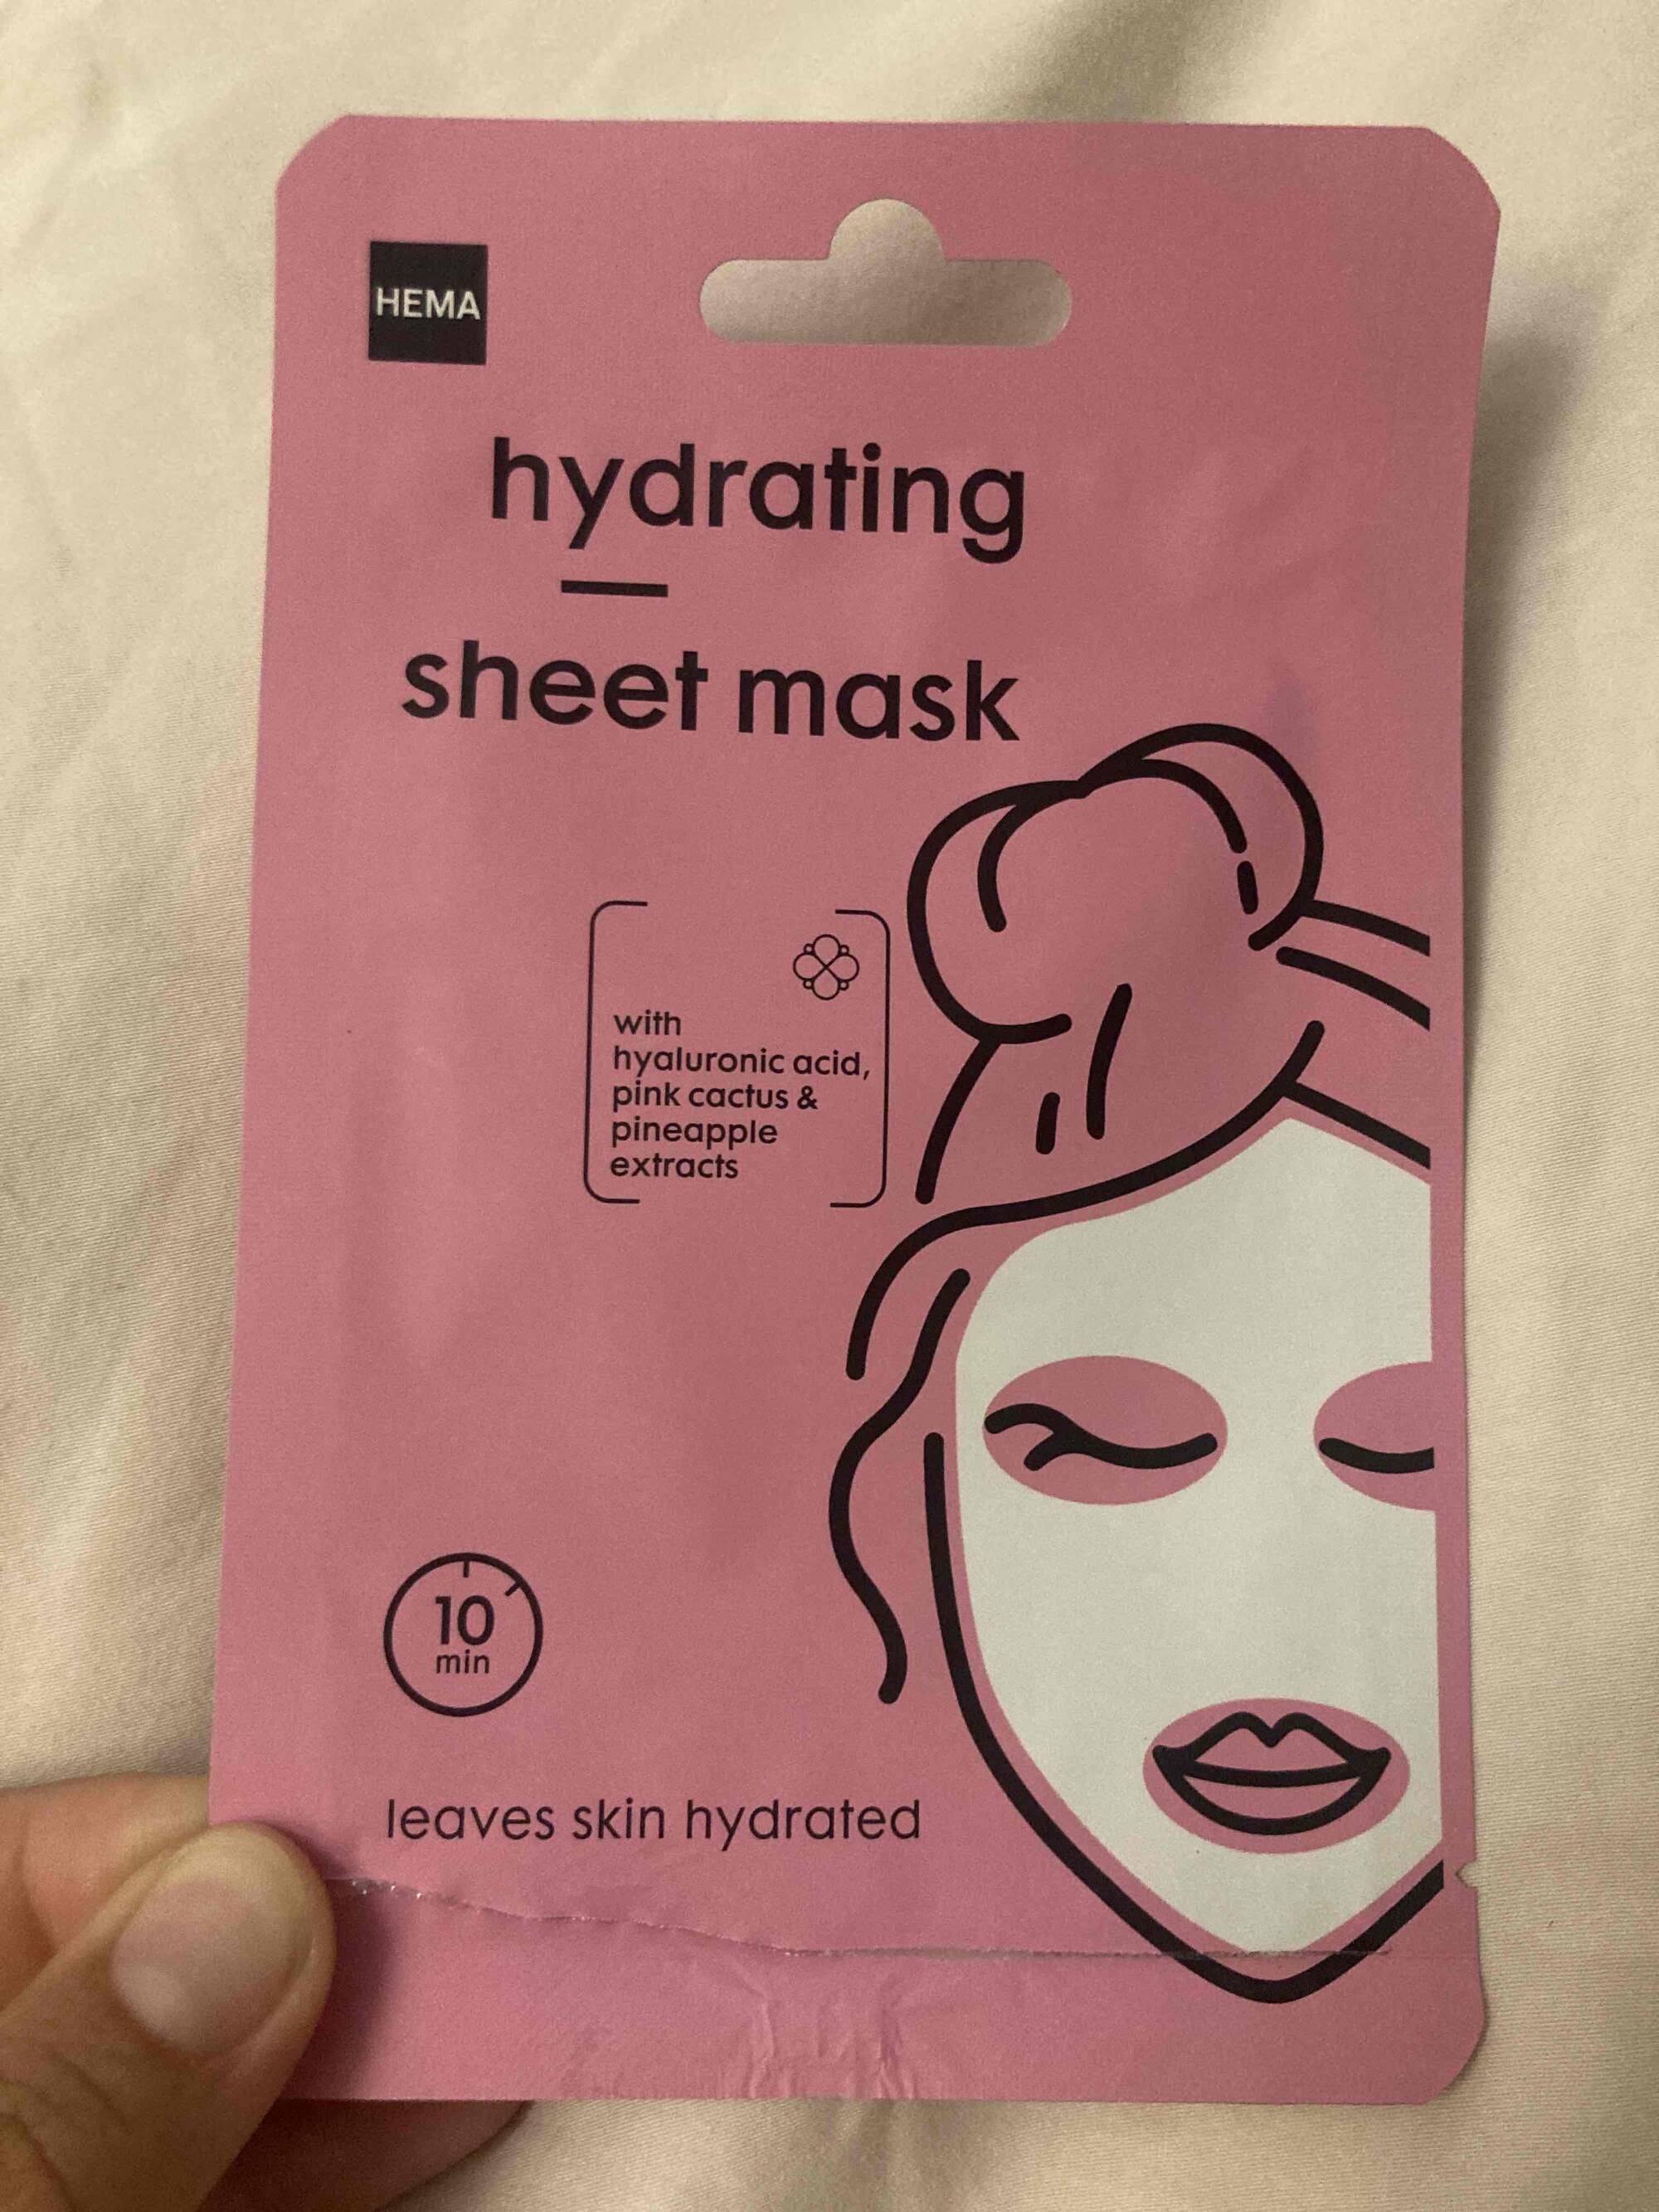 HEMA - Hydrating sheet mask